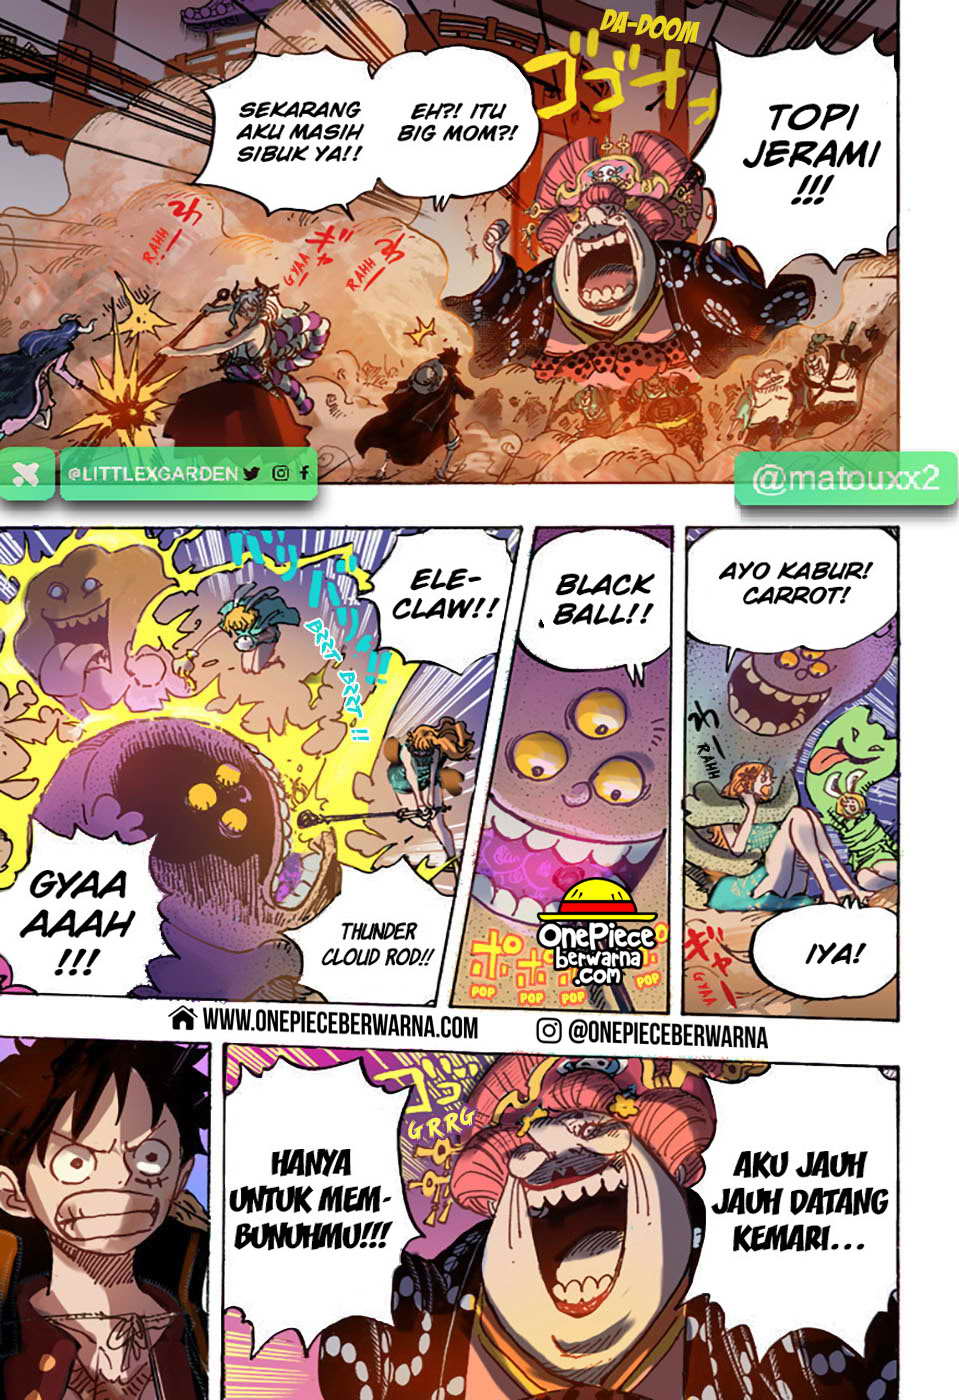 One Piece Berwarna Chapter 987